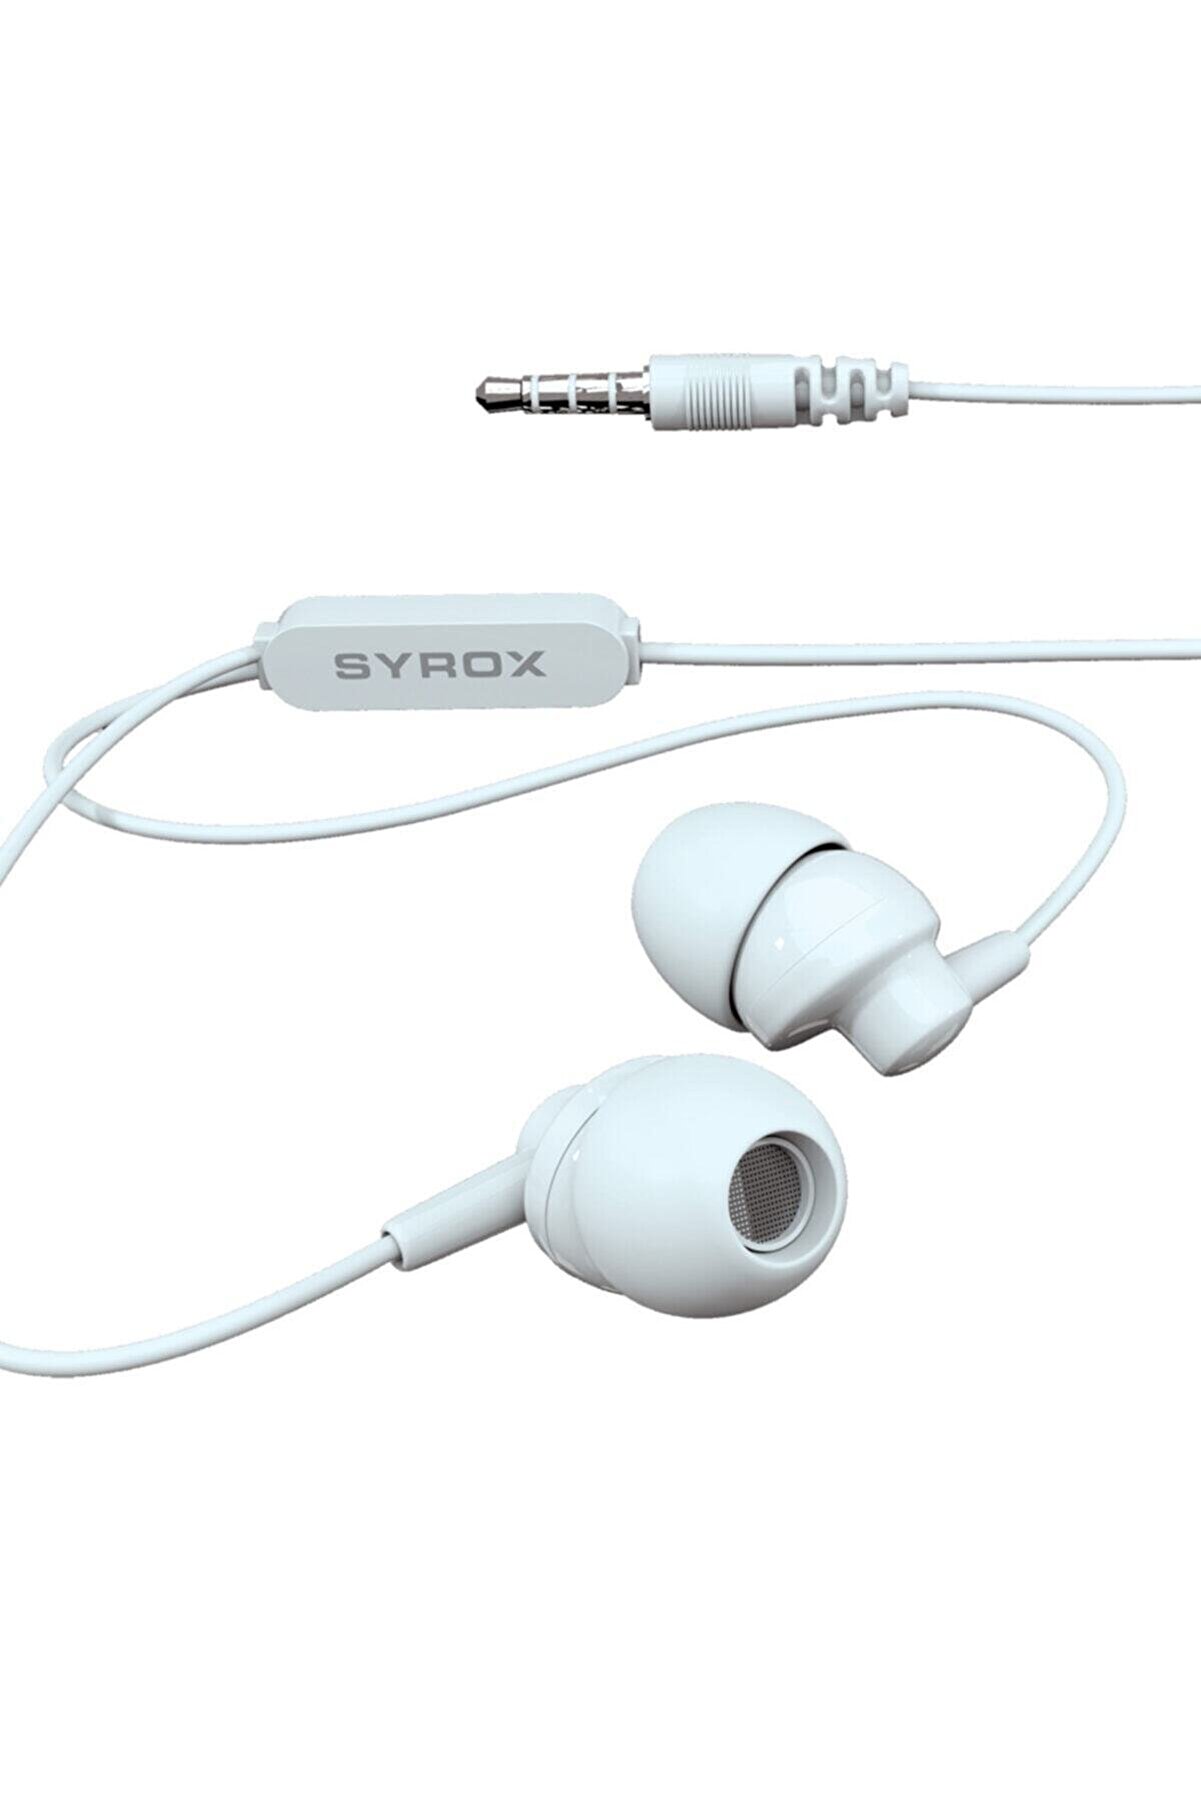 Syrox K13 Mikrofonlu Kulak Içi Kulaklık